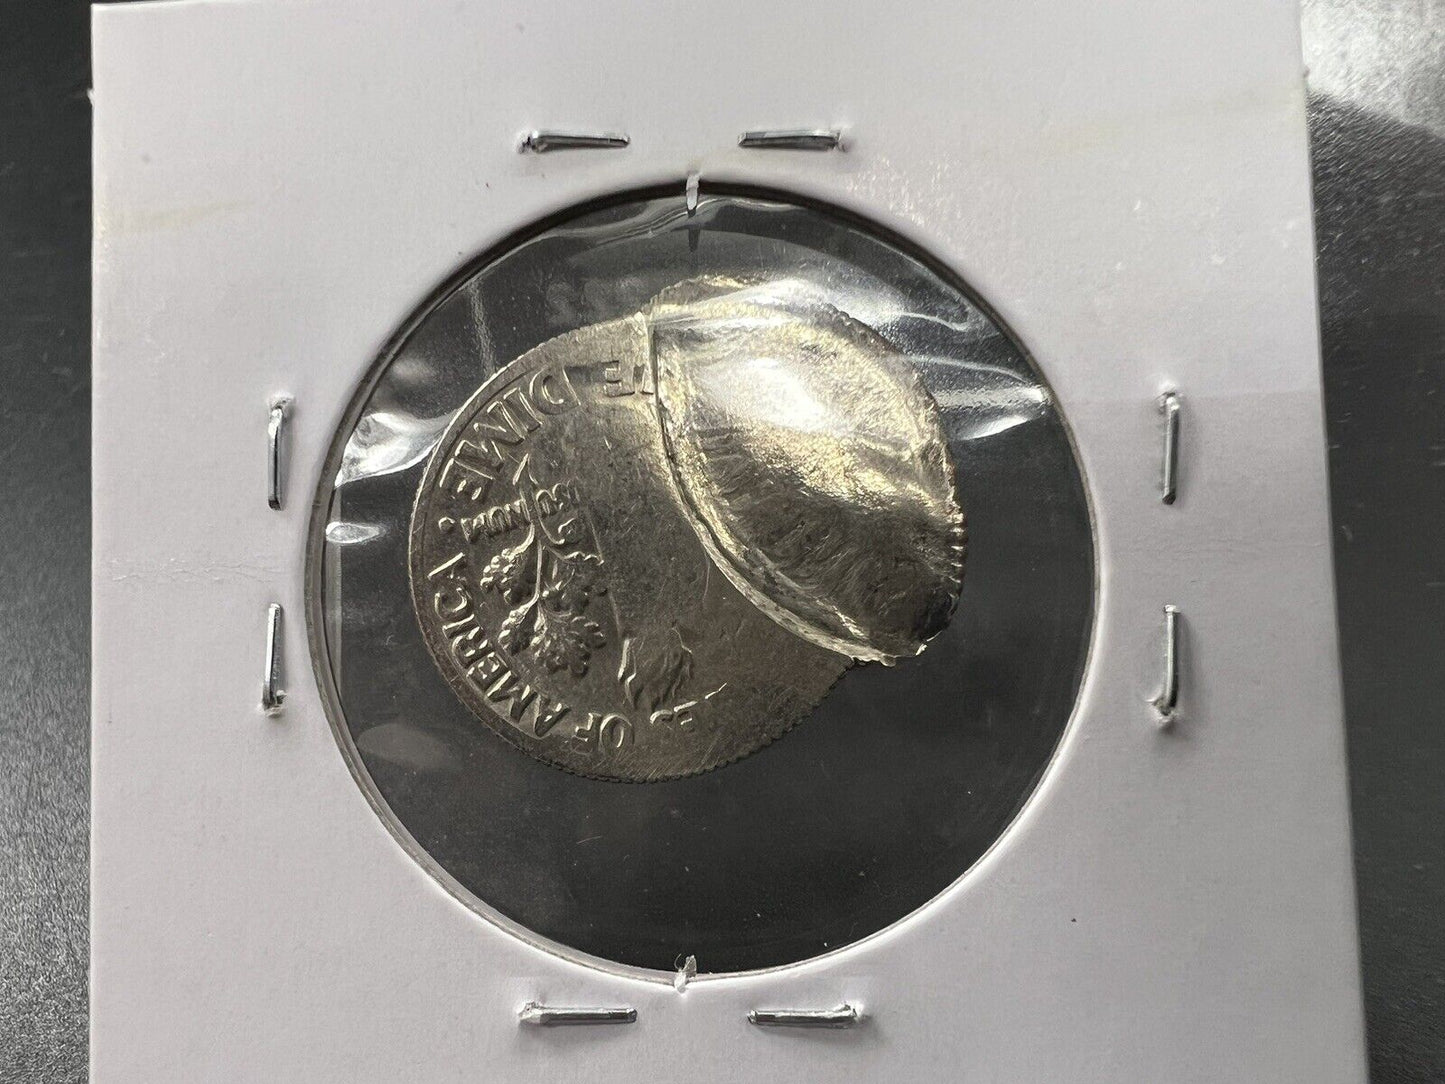 1982 P 10c Double Struck Broken Collar Major Error Coin UNC 2.3 Grams Roosevelt